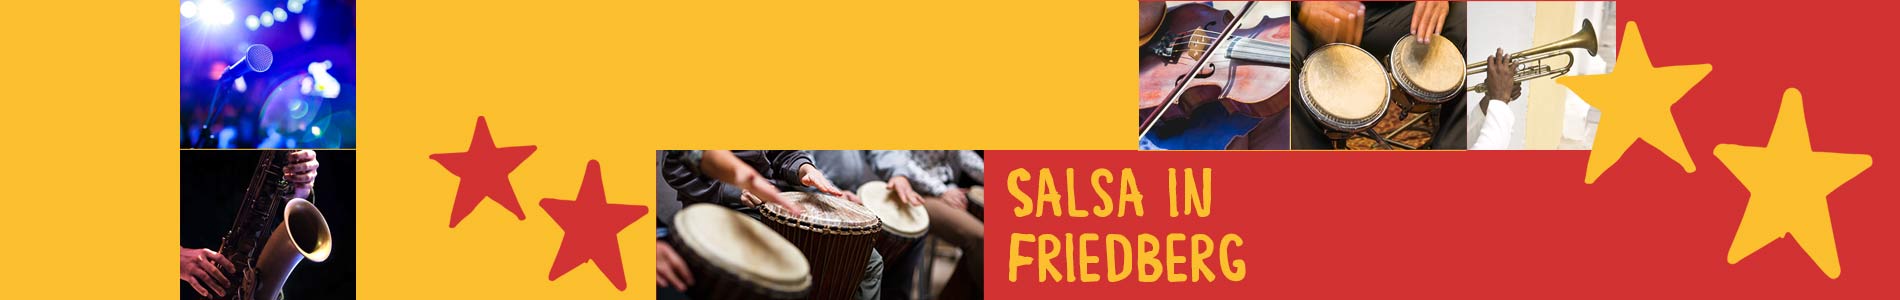 Salsa in Friedberg – Salsa lernen und tanzen, Tanzkurse, Partys, Veranstaltungen